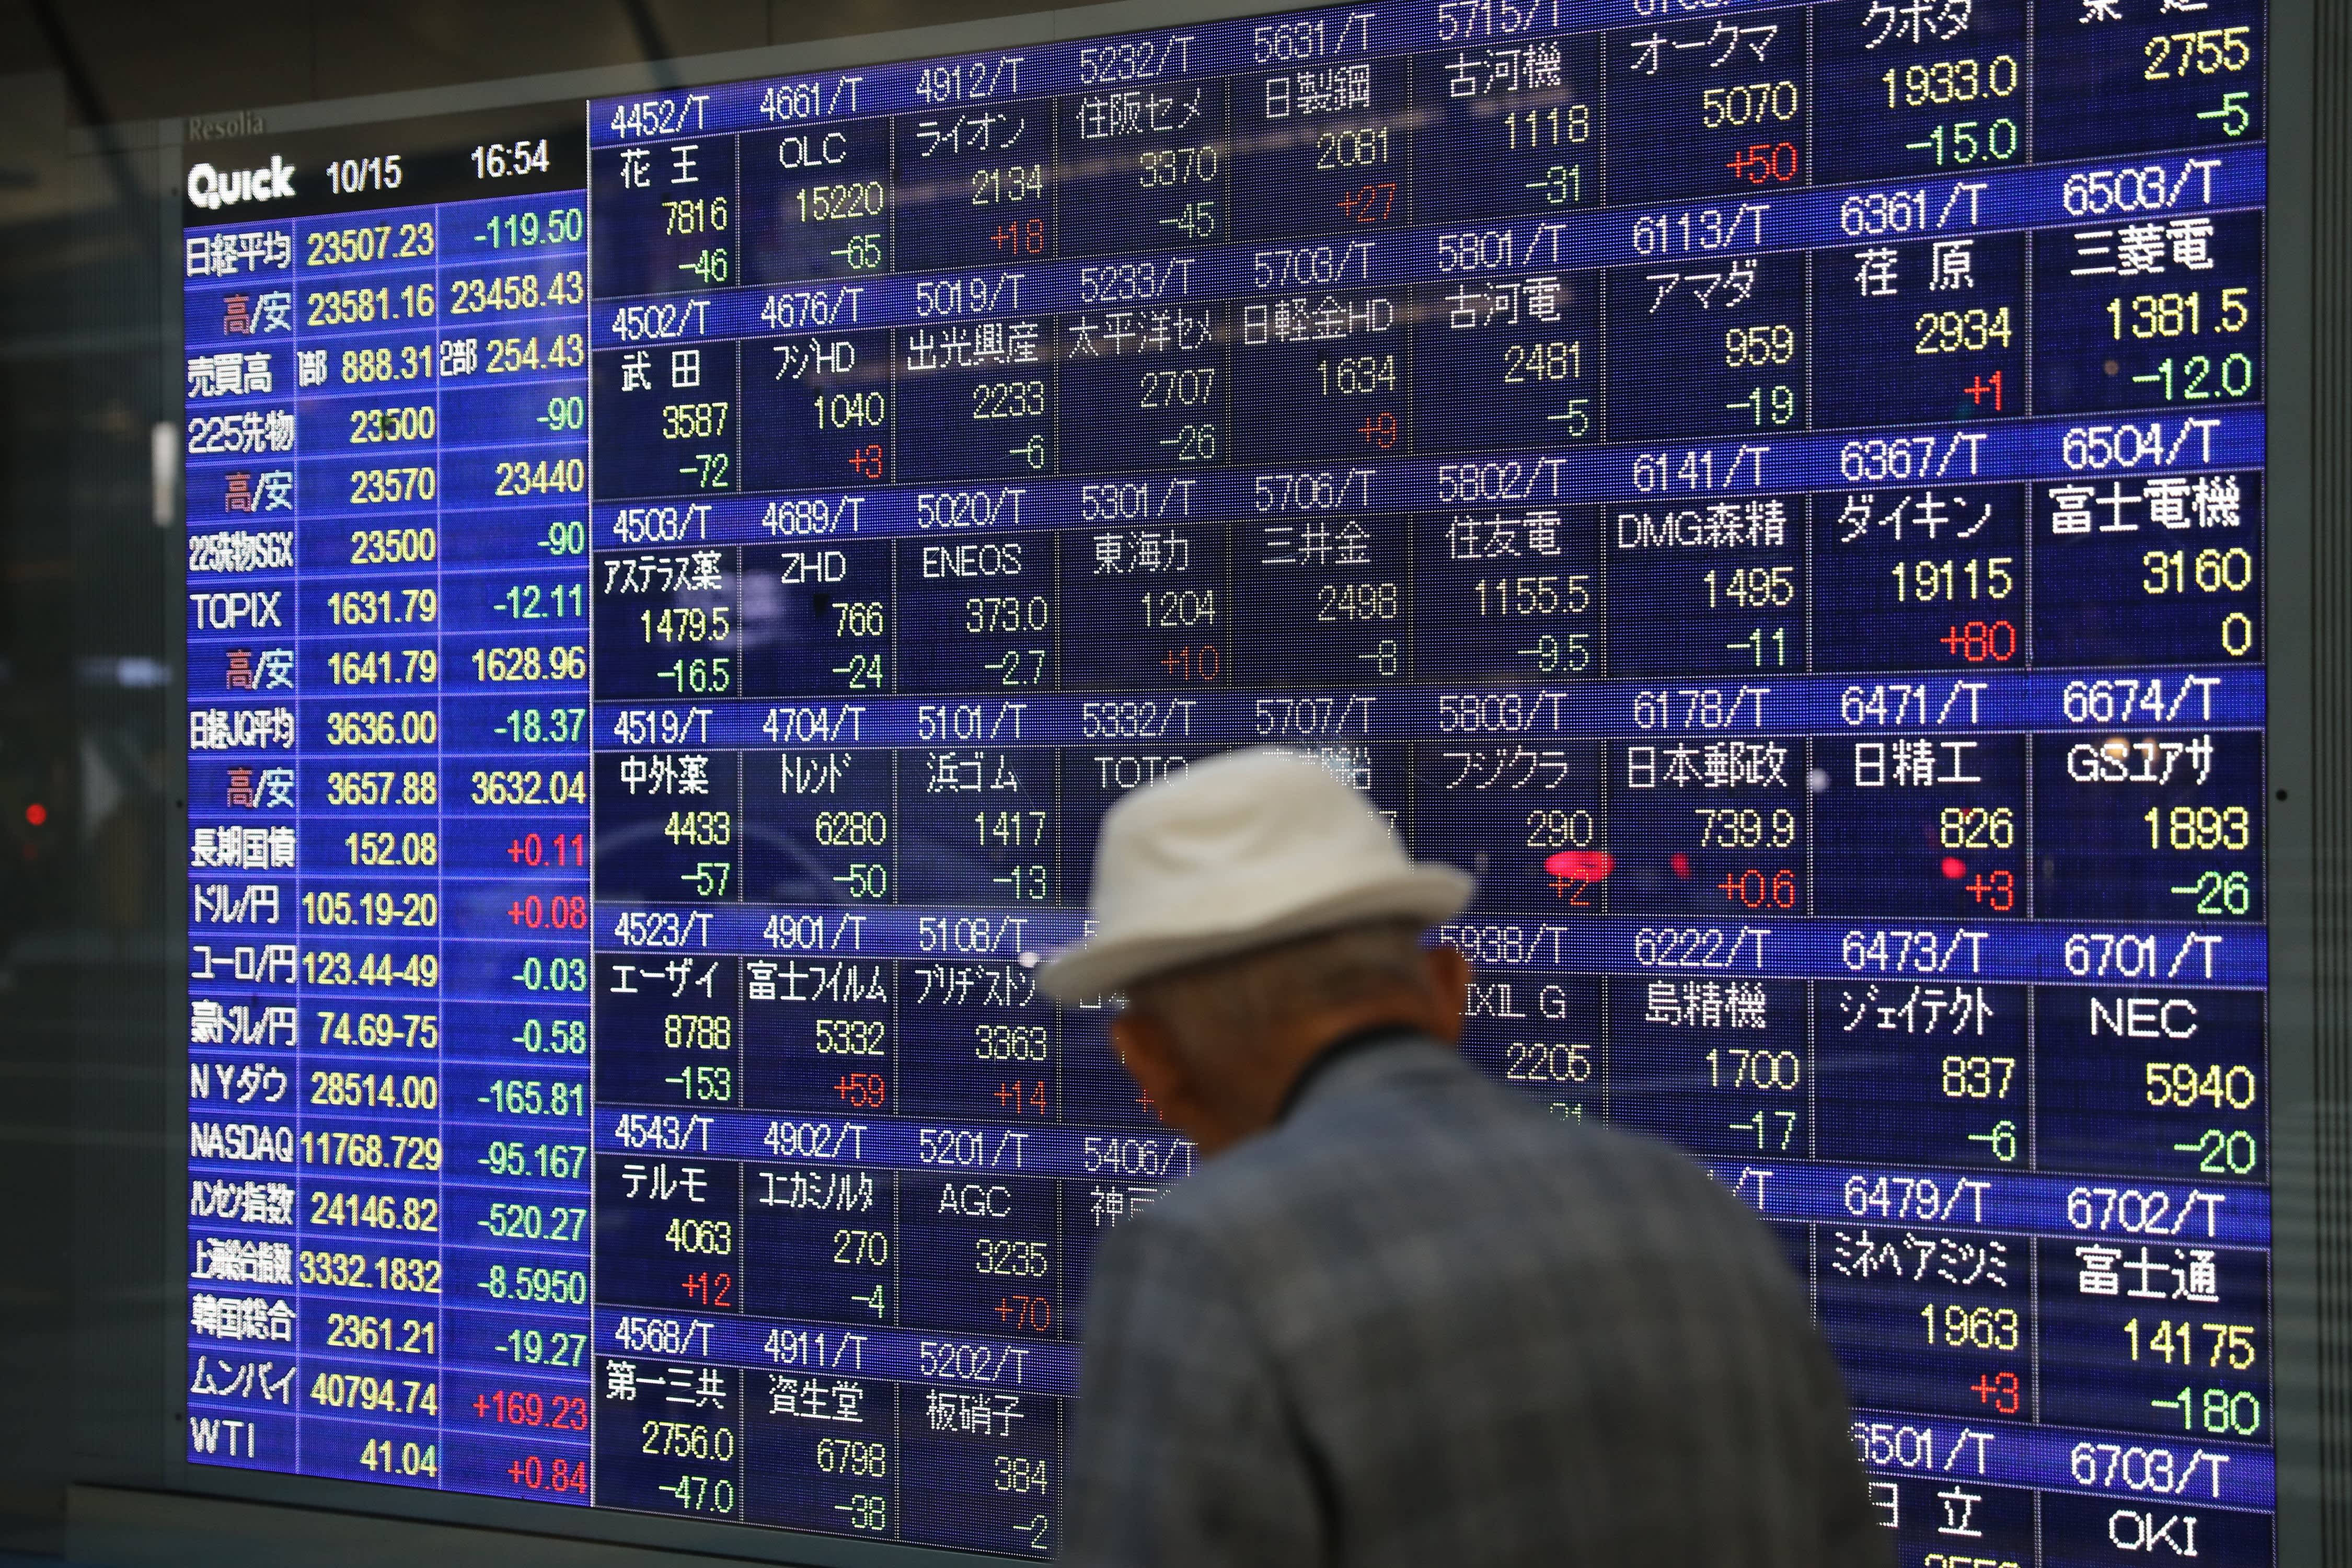 दक्षिण कोरिया के शेयरों में गिरावट, जापान की व्यापार धारणा में सुधार